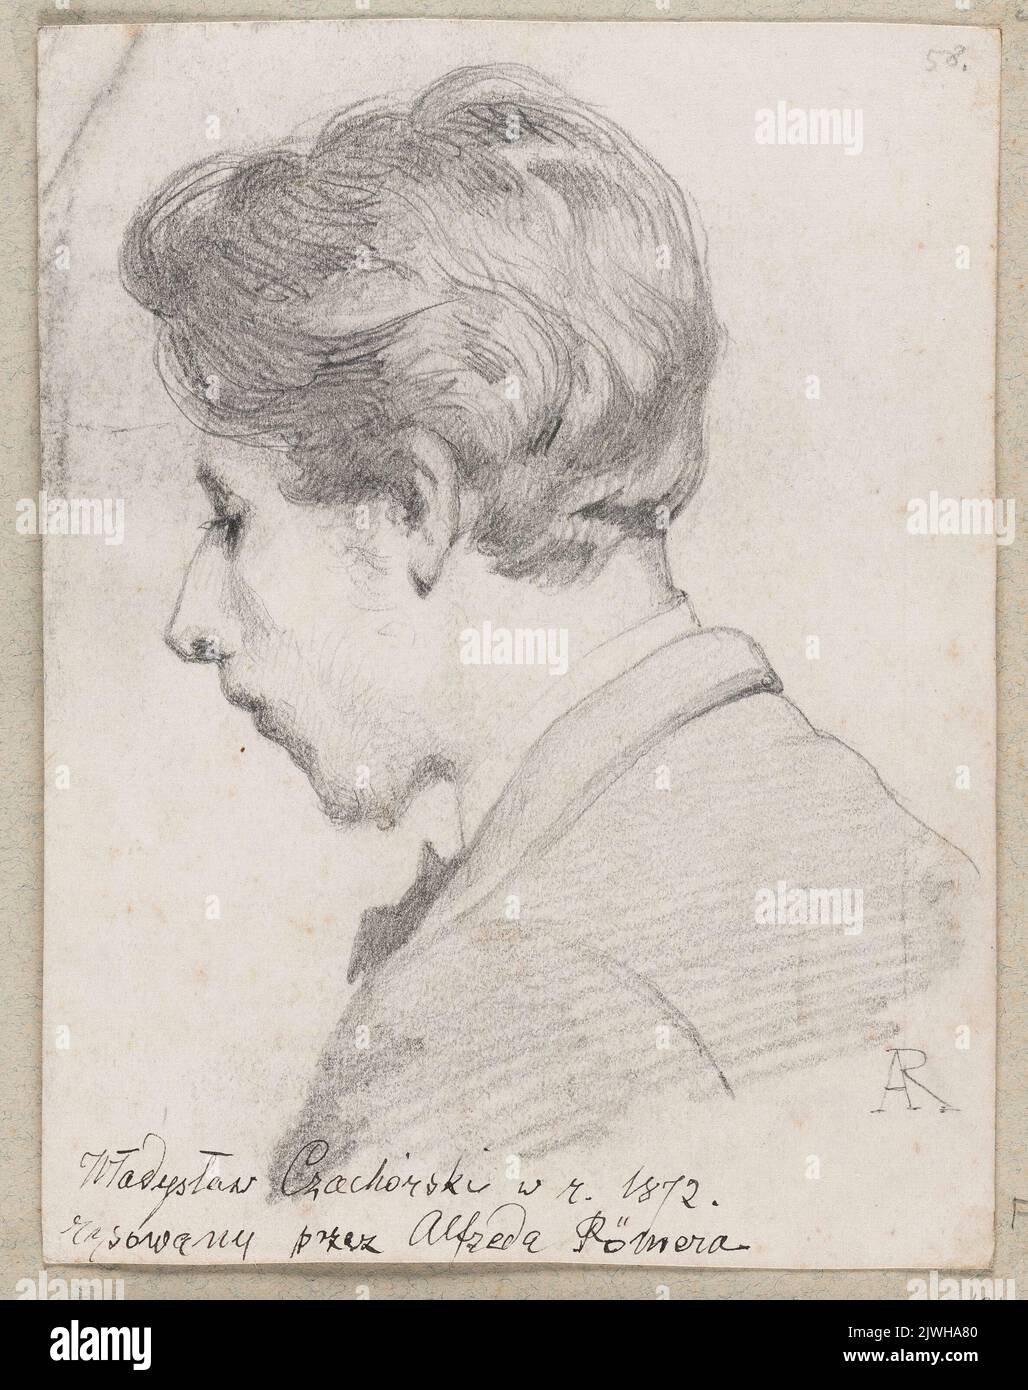 Portrait of Władysław Czachórski. Römer, Alfred Izydor (1832-1897), draughtsman, cartoonist Stock Photo